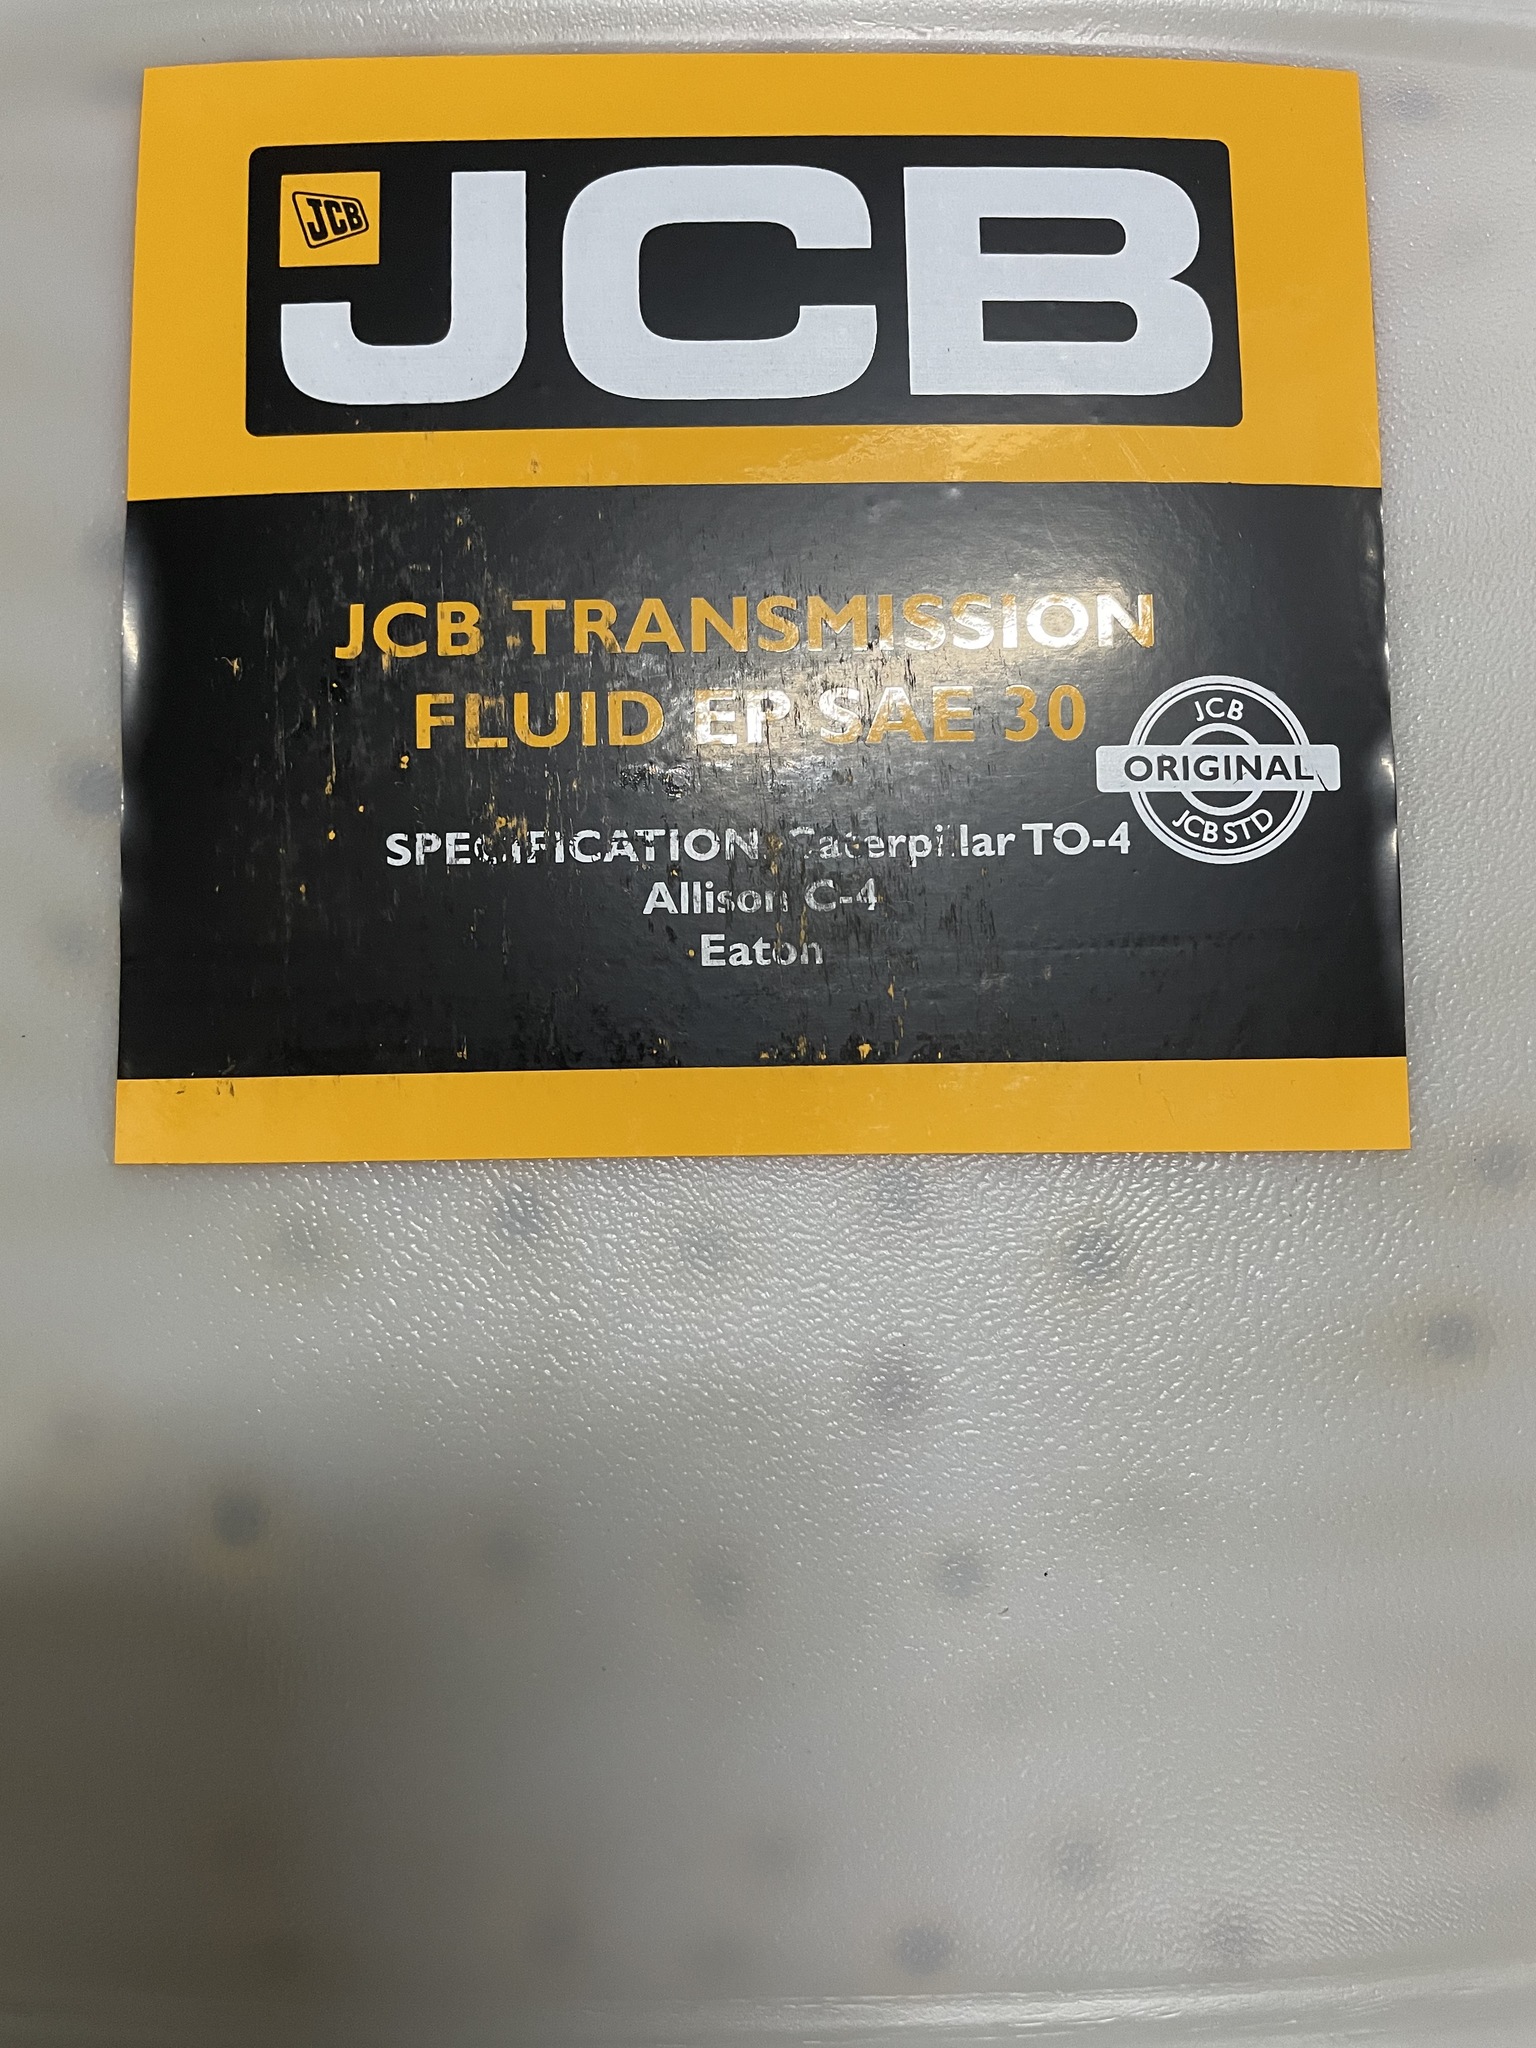 Jcb масло в мосты. Трансмиссионное масло JCB Ep SAE 30. Масло трансмиссионное для JCB 3cx. Фильтр трансмиссии JCB-426. Машинное масло JCB.